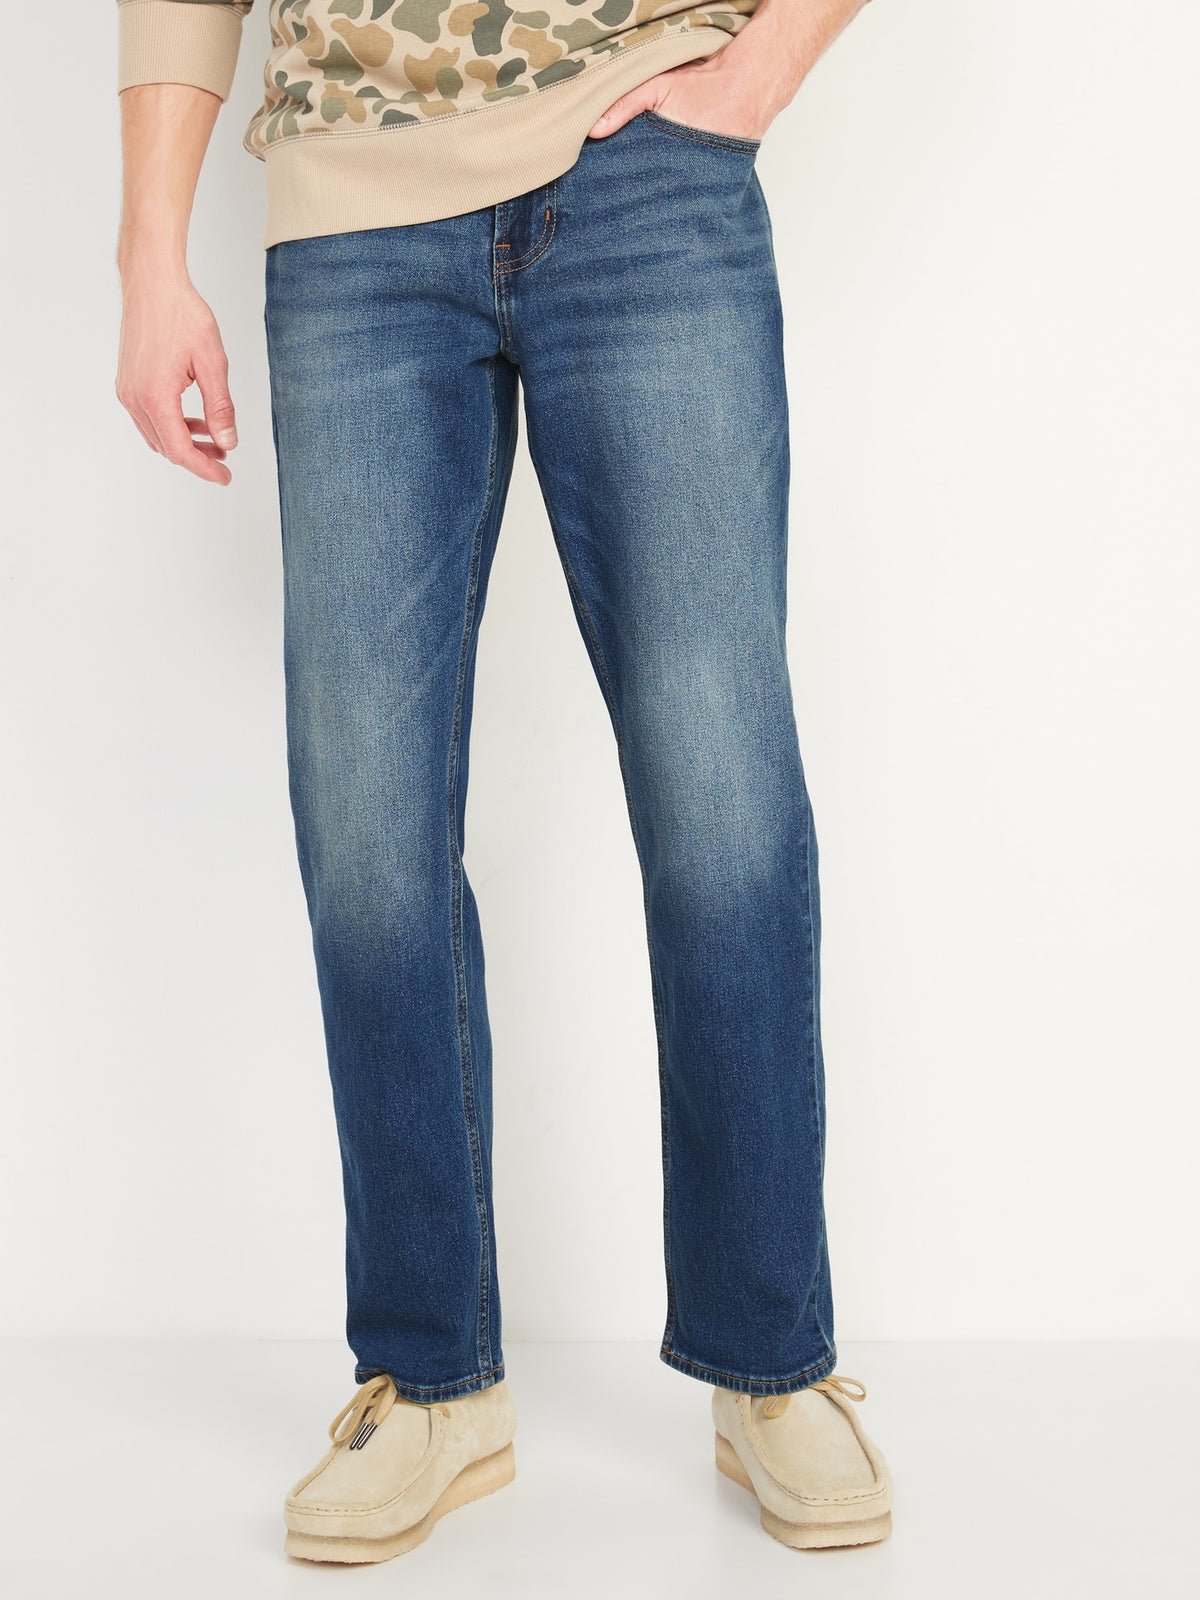 Straight Built-In Flex Jeans For Men_TintedLightWash_2650.jpeg